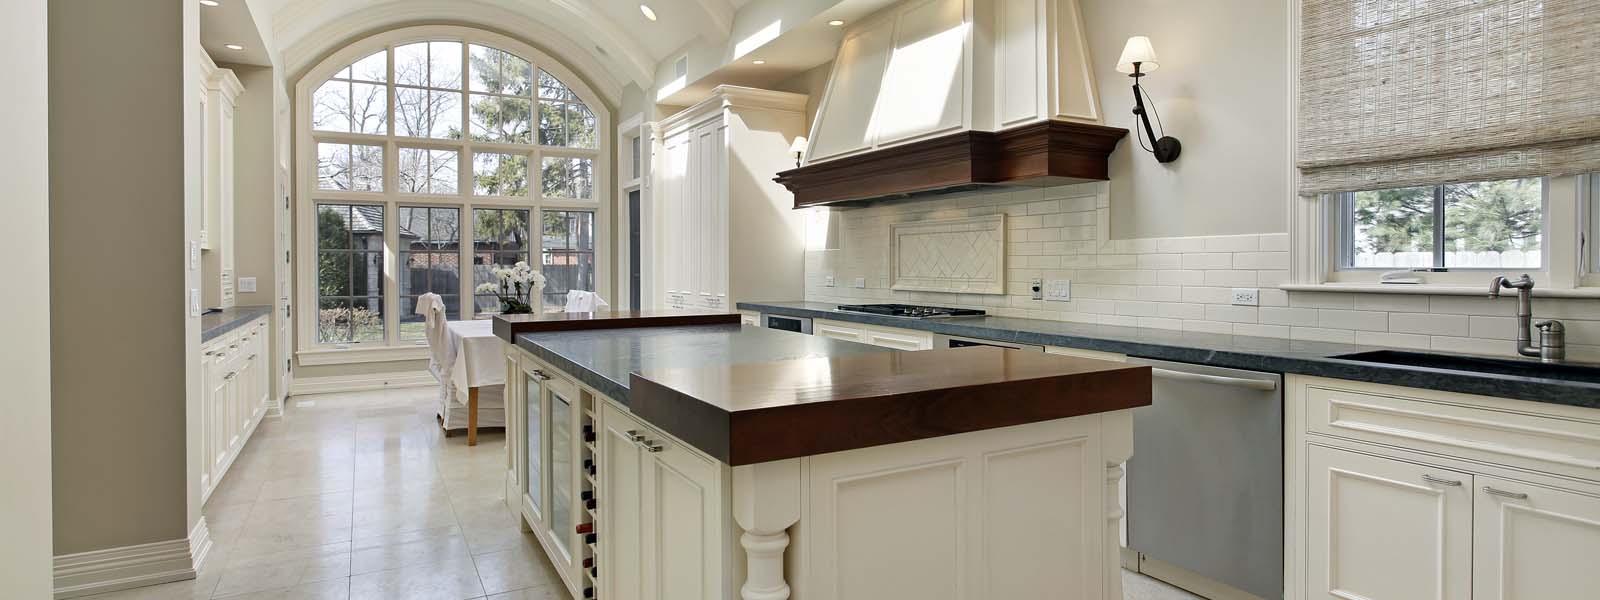 slider_0002_bigstock-Large-kitchen-in-luxury-home-w-54260750